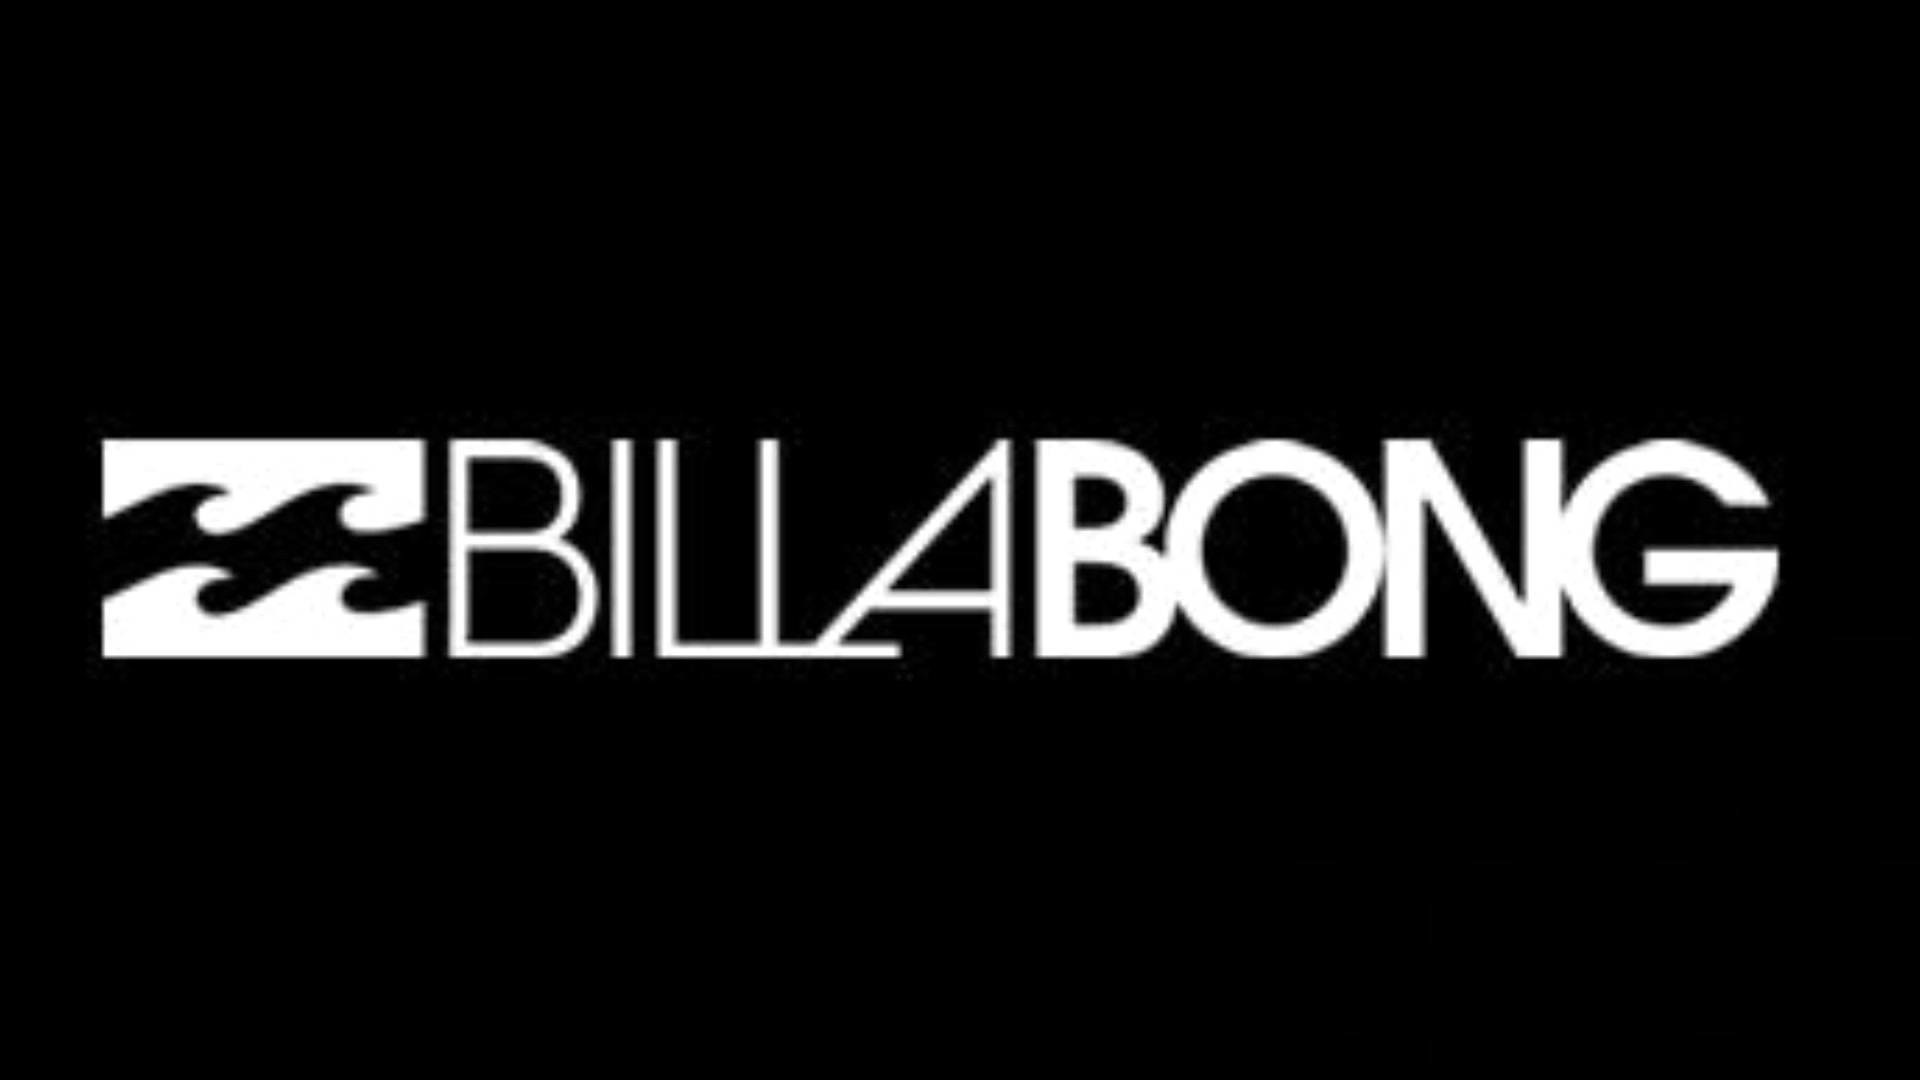 billabong logo png and vector logo download on billabong logo wallpaper